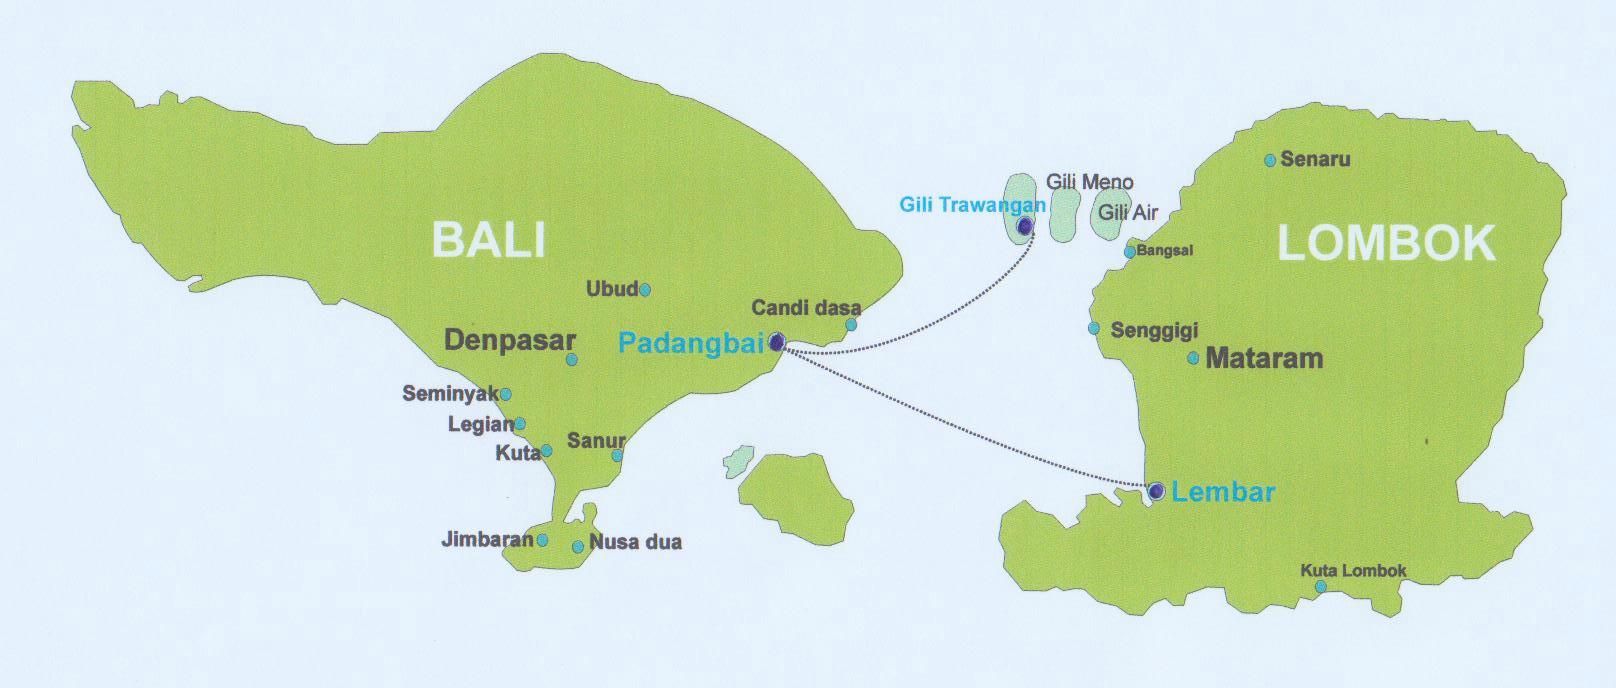 Бали, индонезия — 1 день на острове